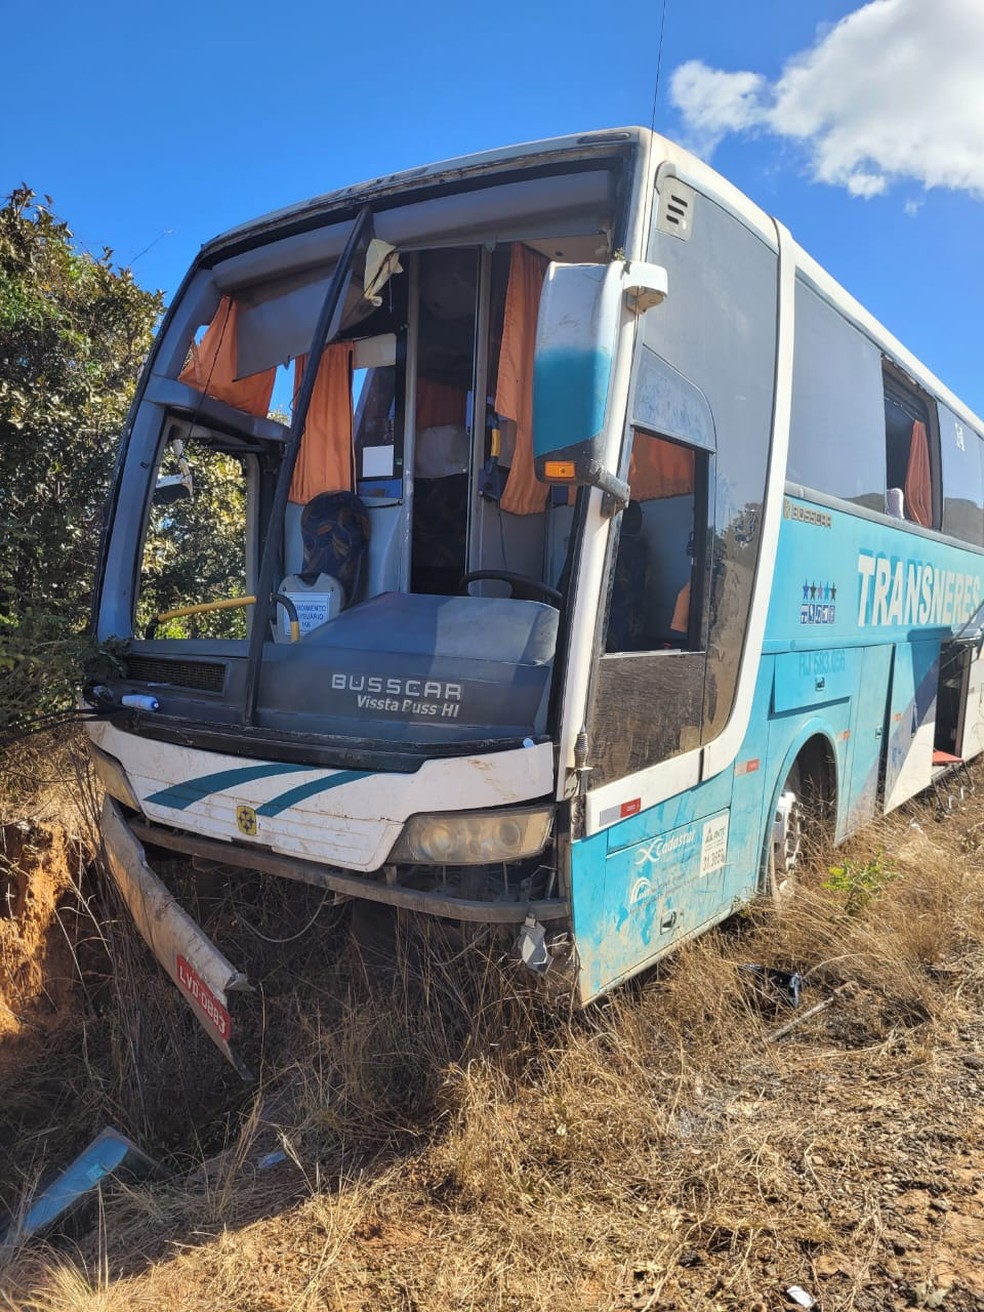 Ônibus tomba e deixa dois mortos na BR-251 em Salinas - Mobilidade BH